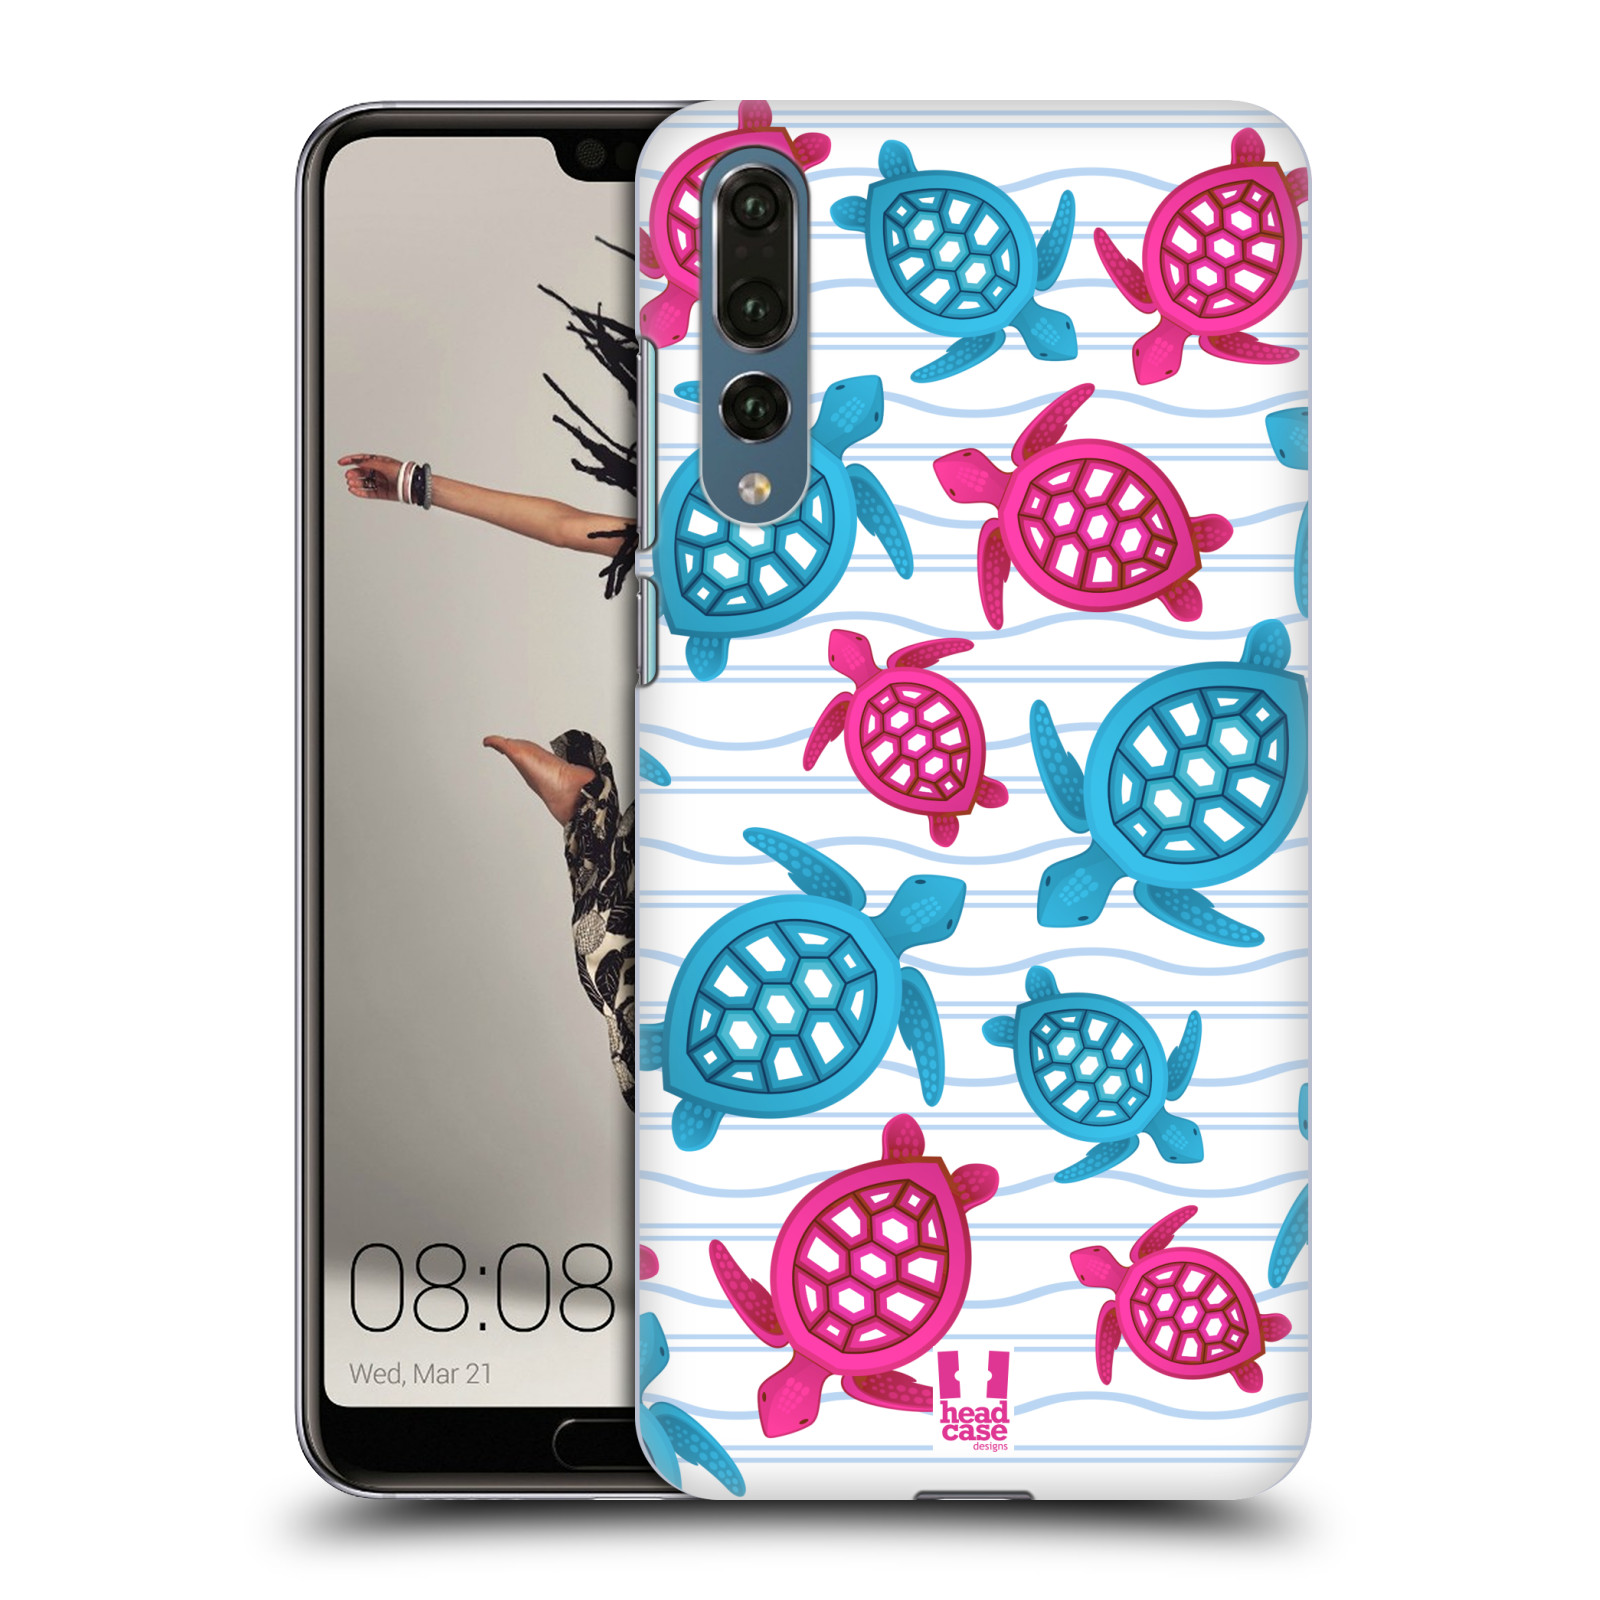 Zadní obal pro mobil Huawei P20 PRO - HEAD CASE - kreslený mořský vzor želvičky